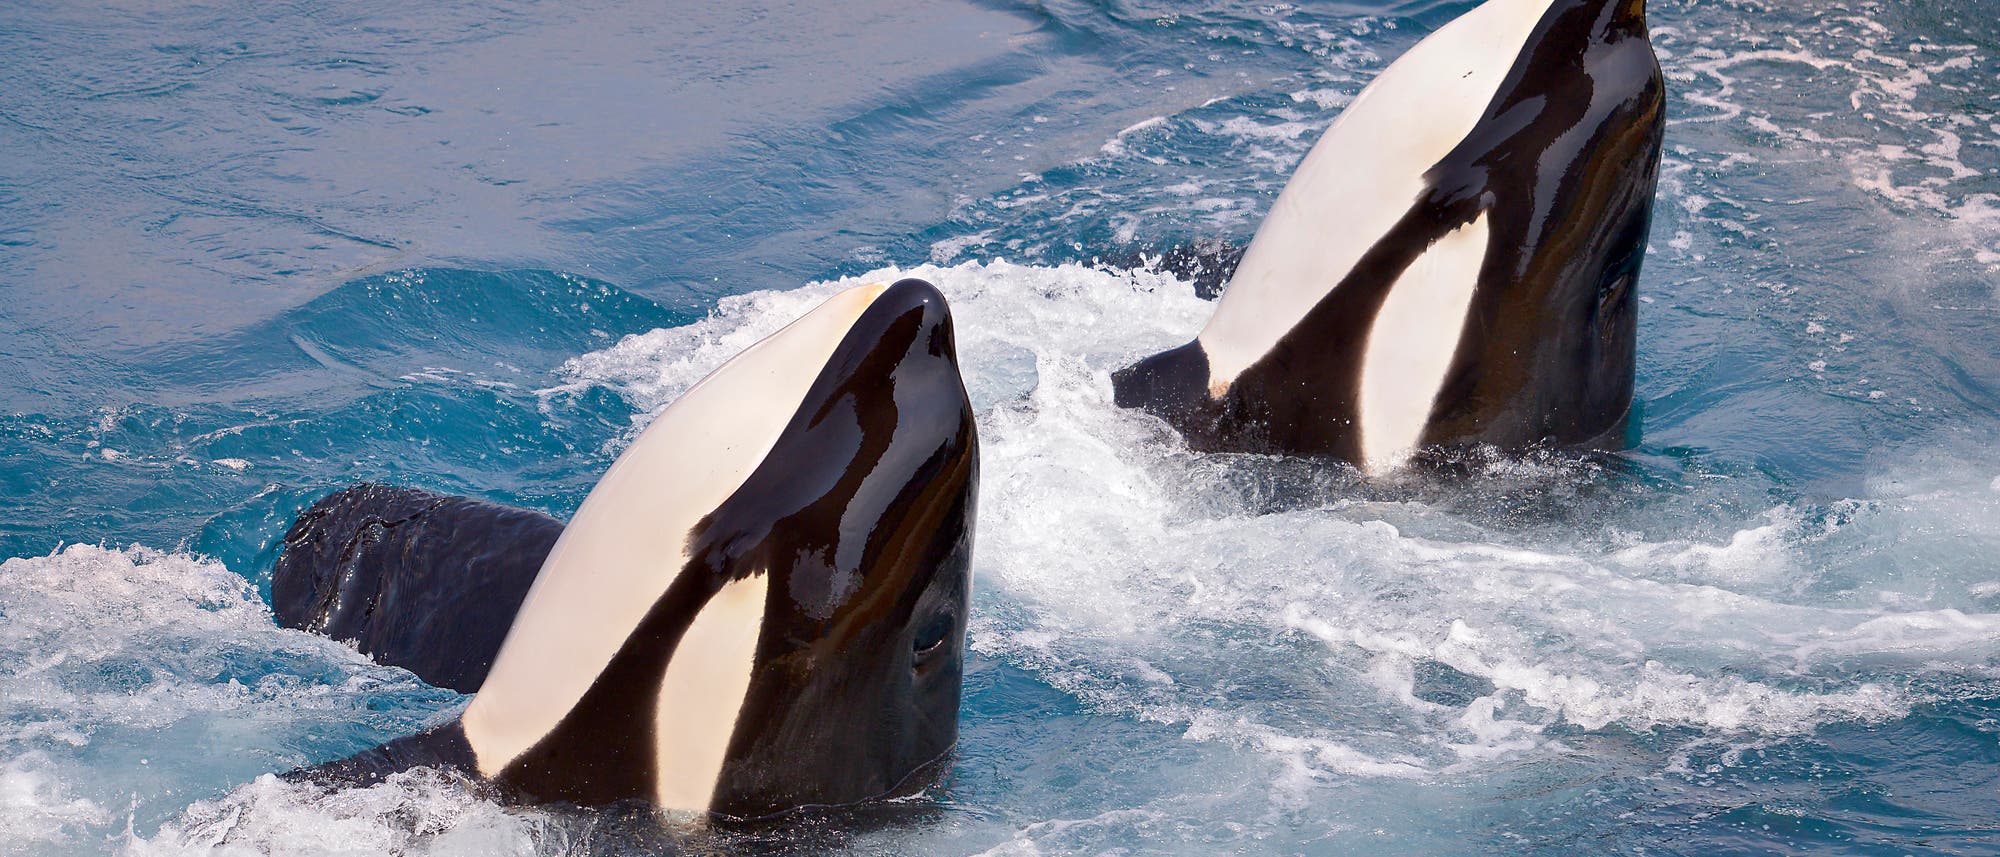 Zwei Orcas schauen aus dem Wasser